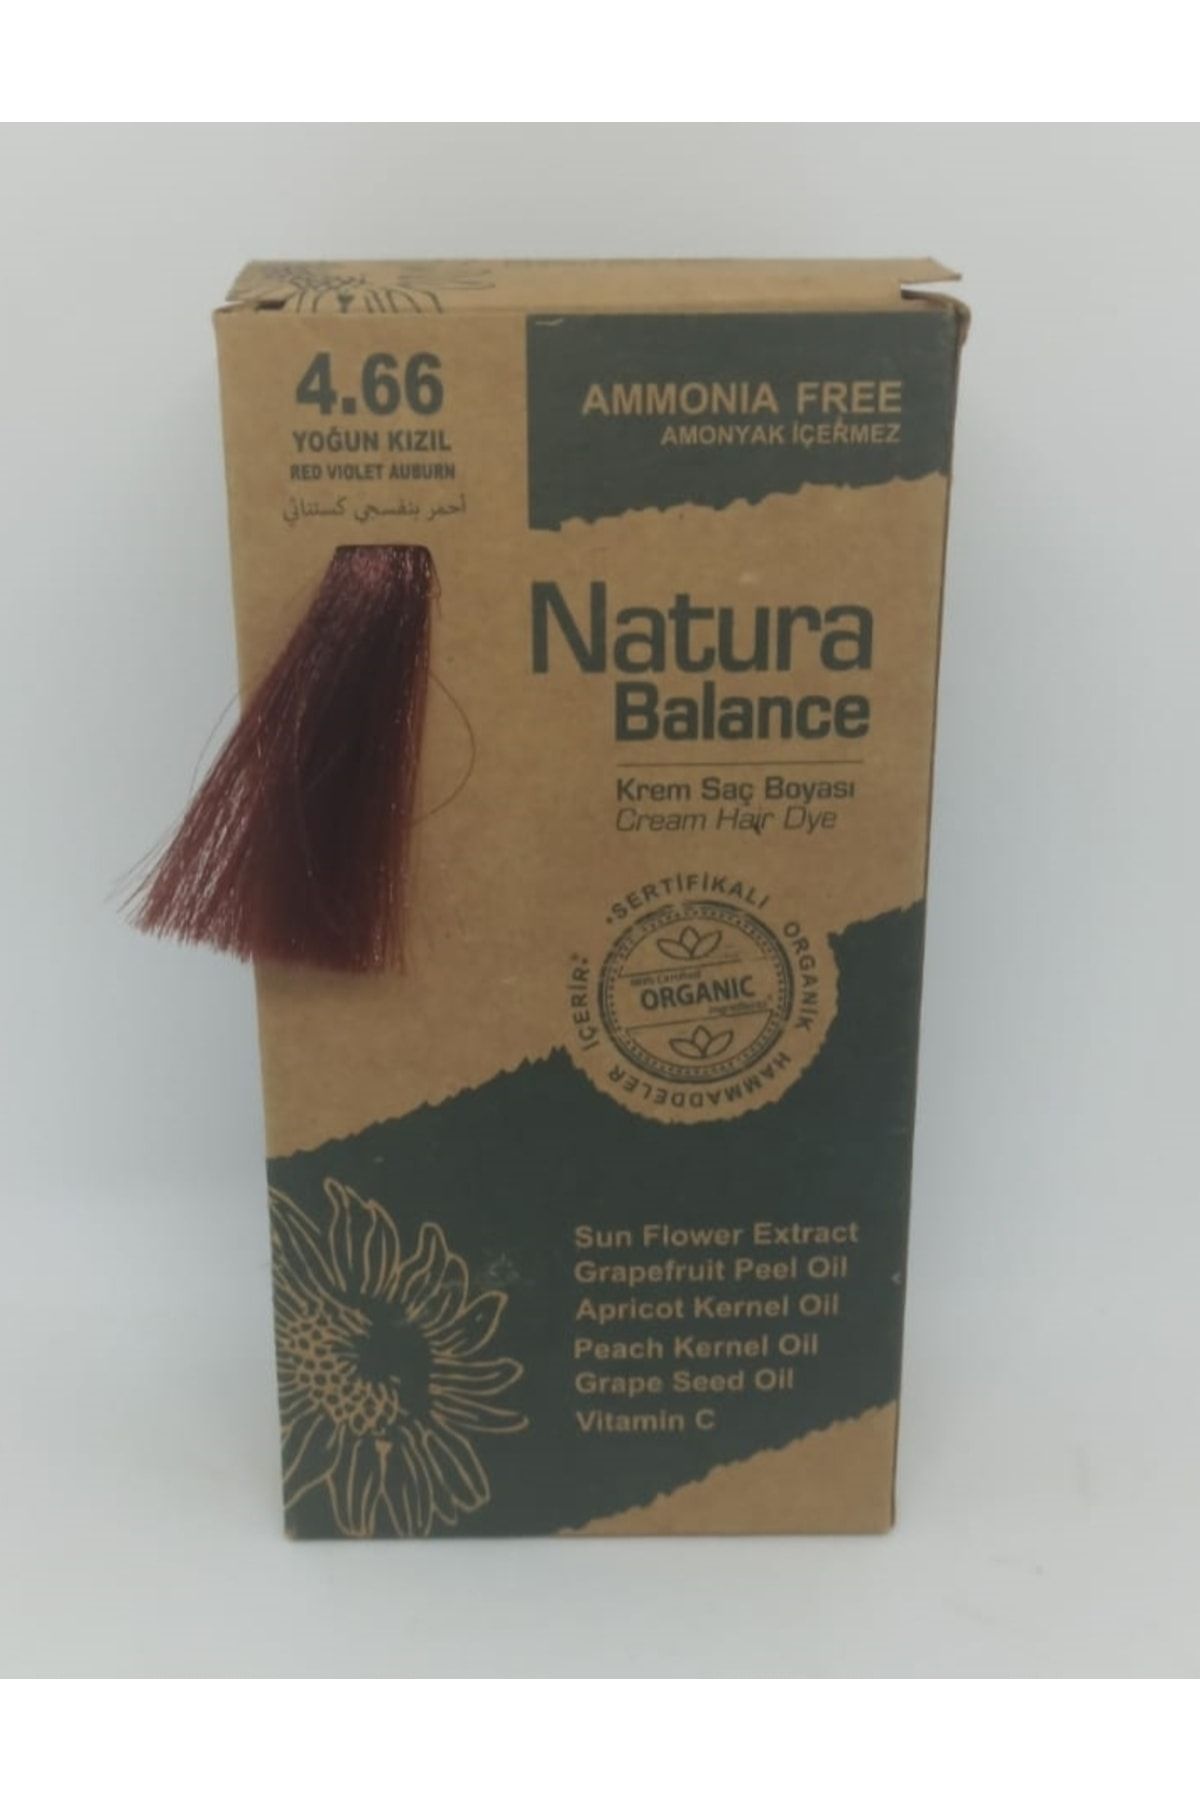 NATURABALANCE Natura Balance Organik Saç Boyası Seti Yoğun Kızıl